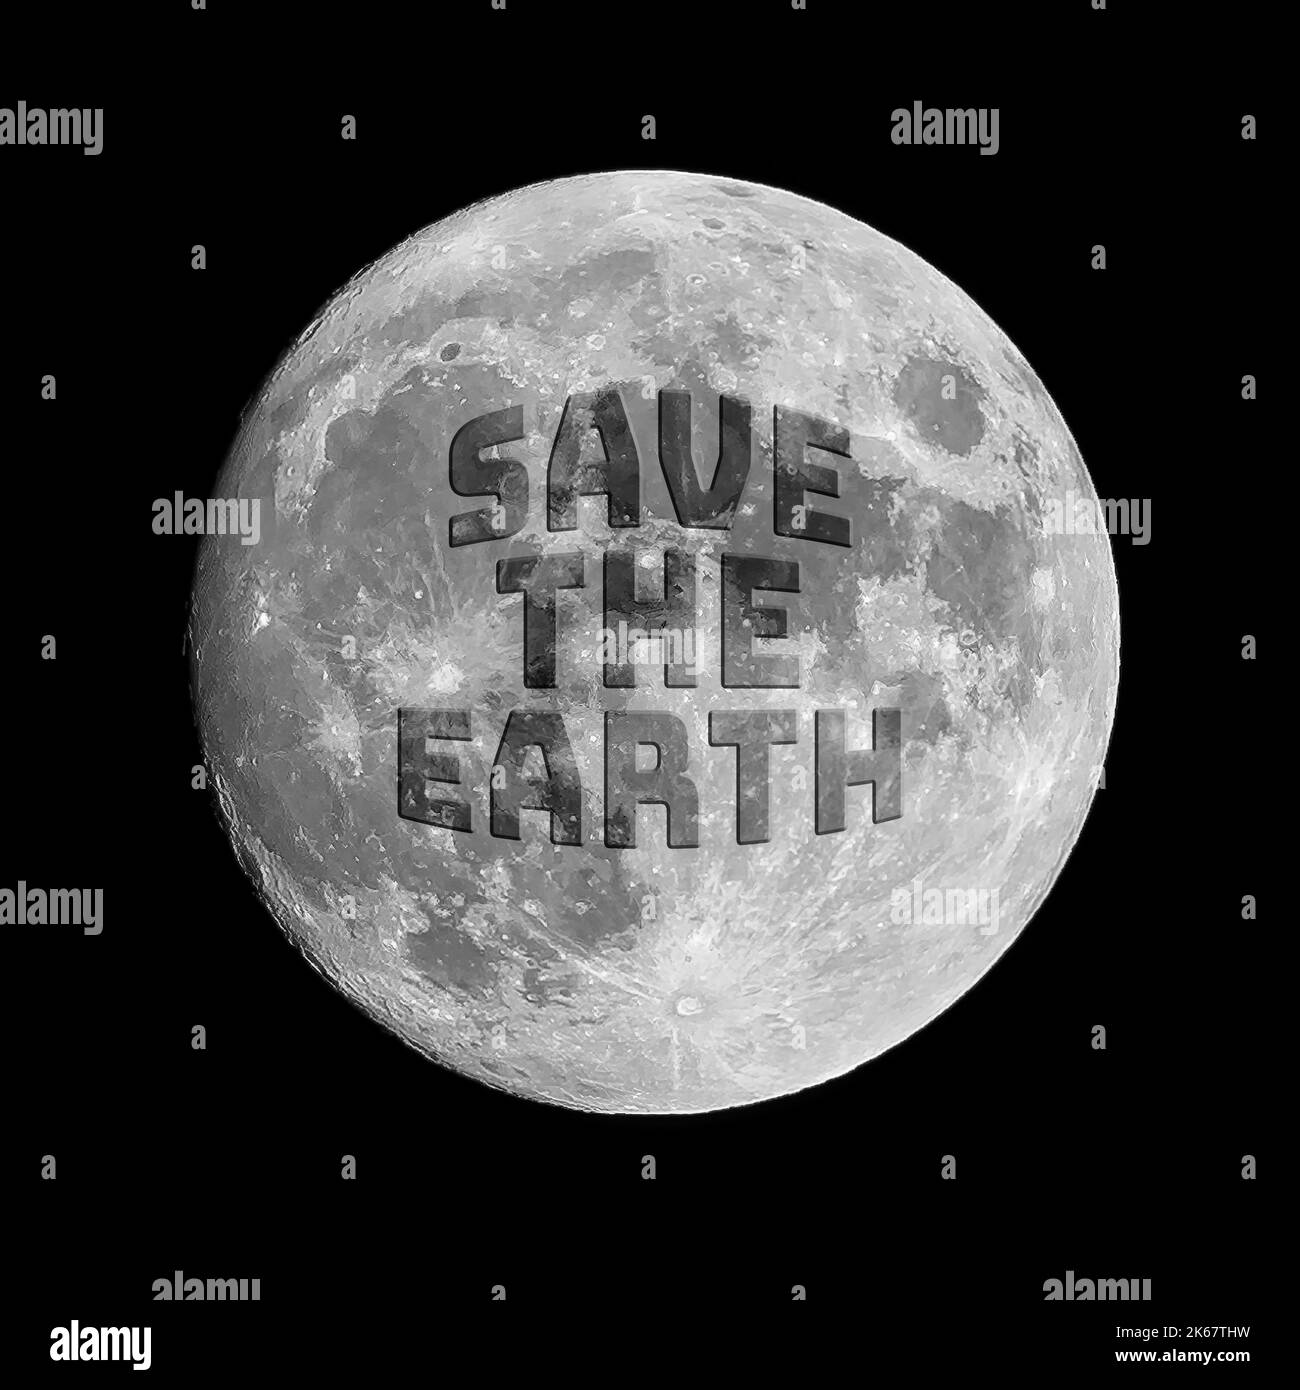 Expression, sauver la terre, écrit sur la surface de la lune, appelant à des mesures pour sauver la planète de l'autodestruction. Banque D'Images